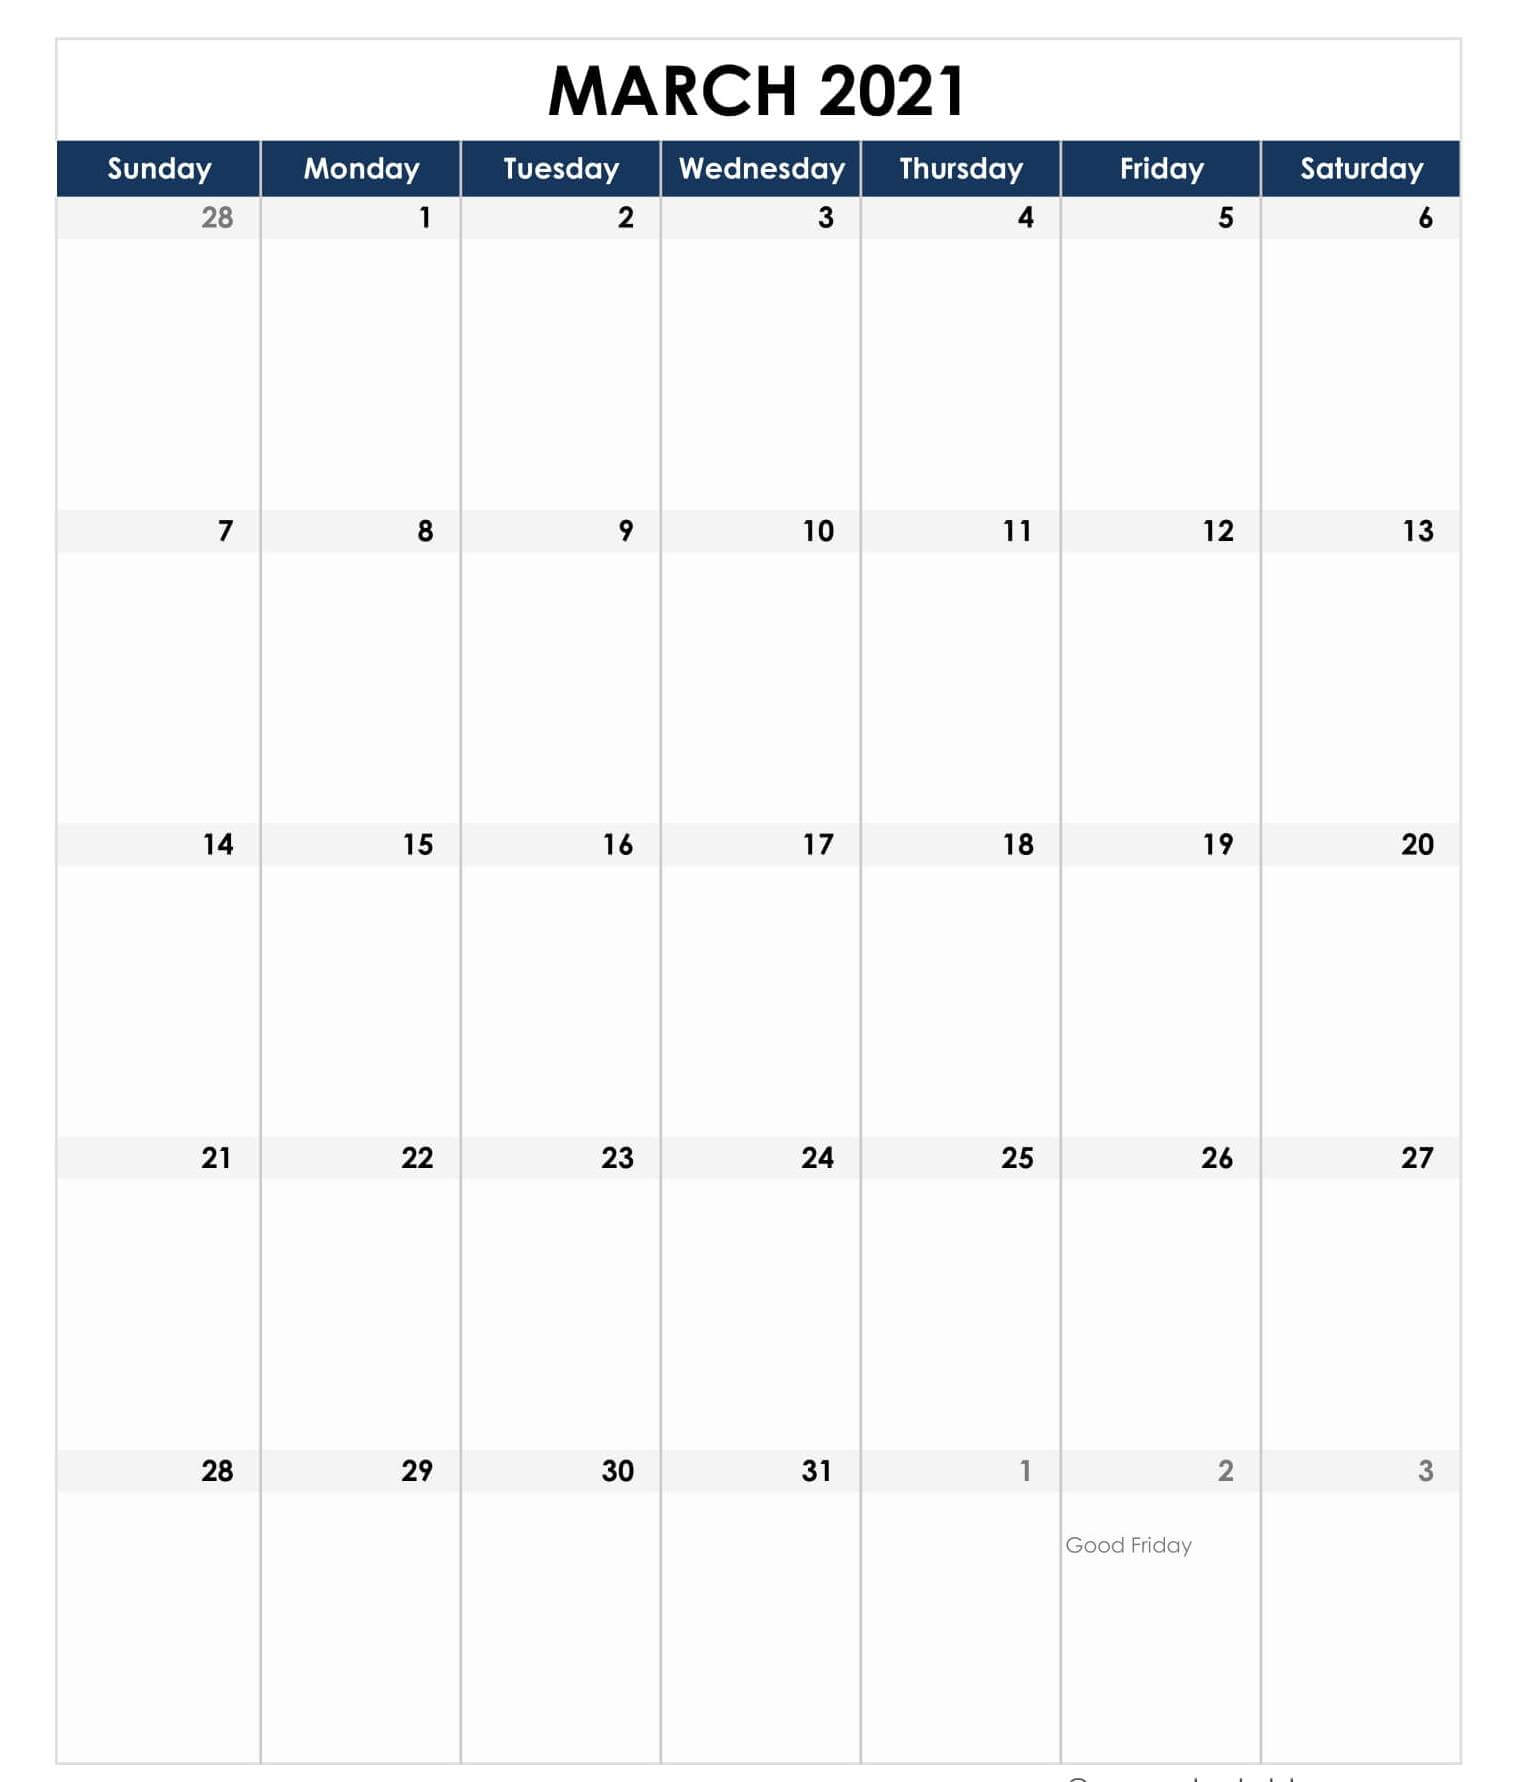 March Public Holidays 2021 Calendar